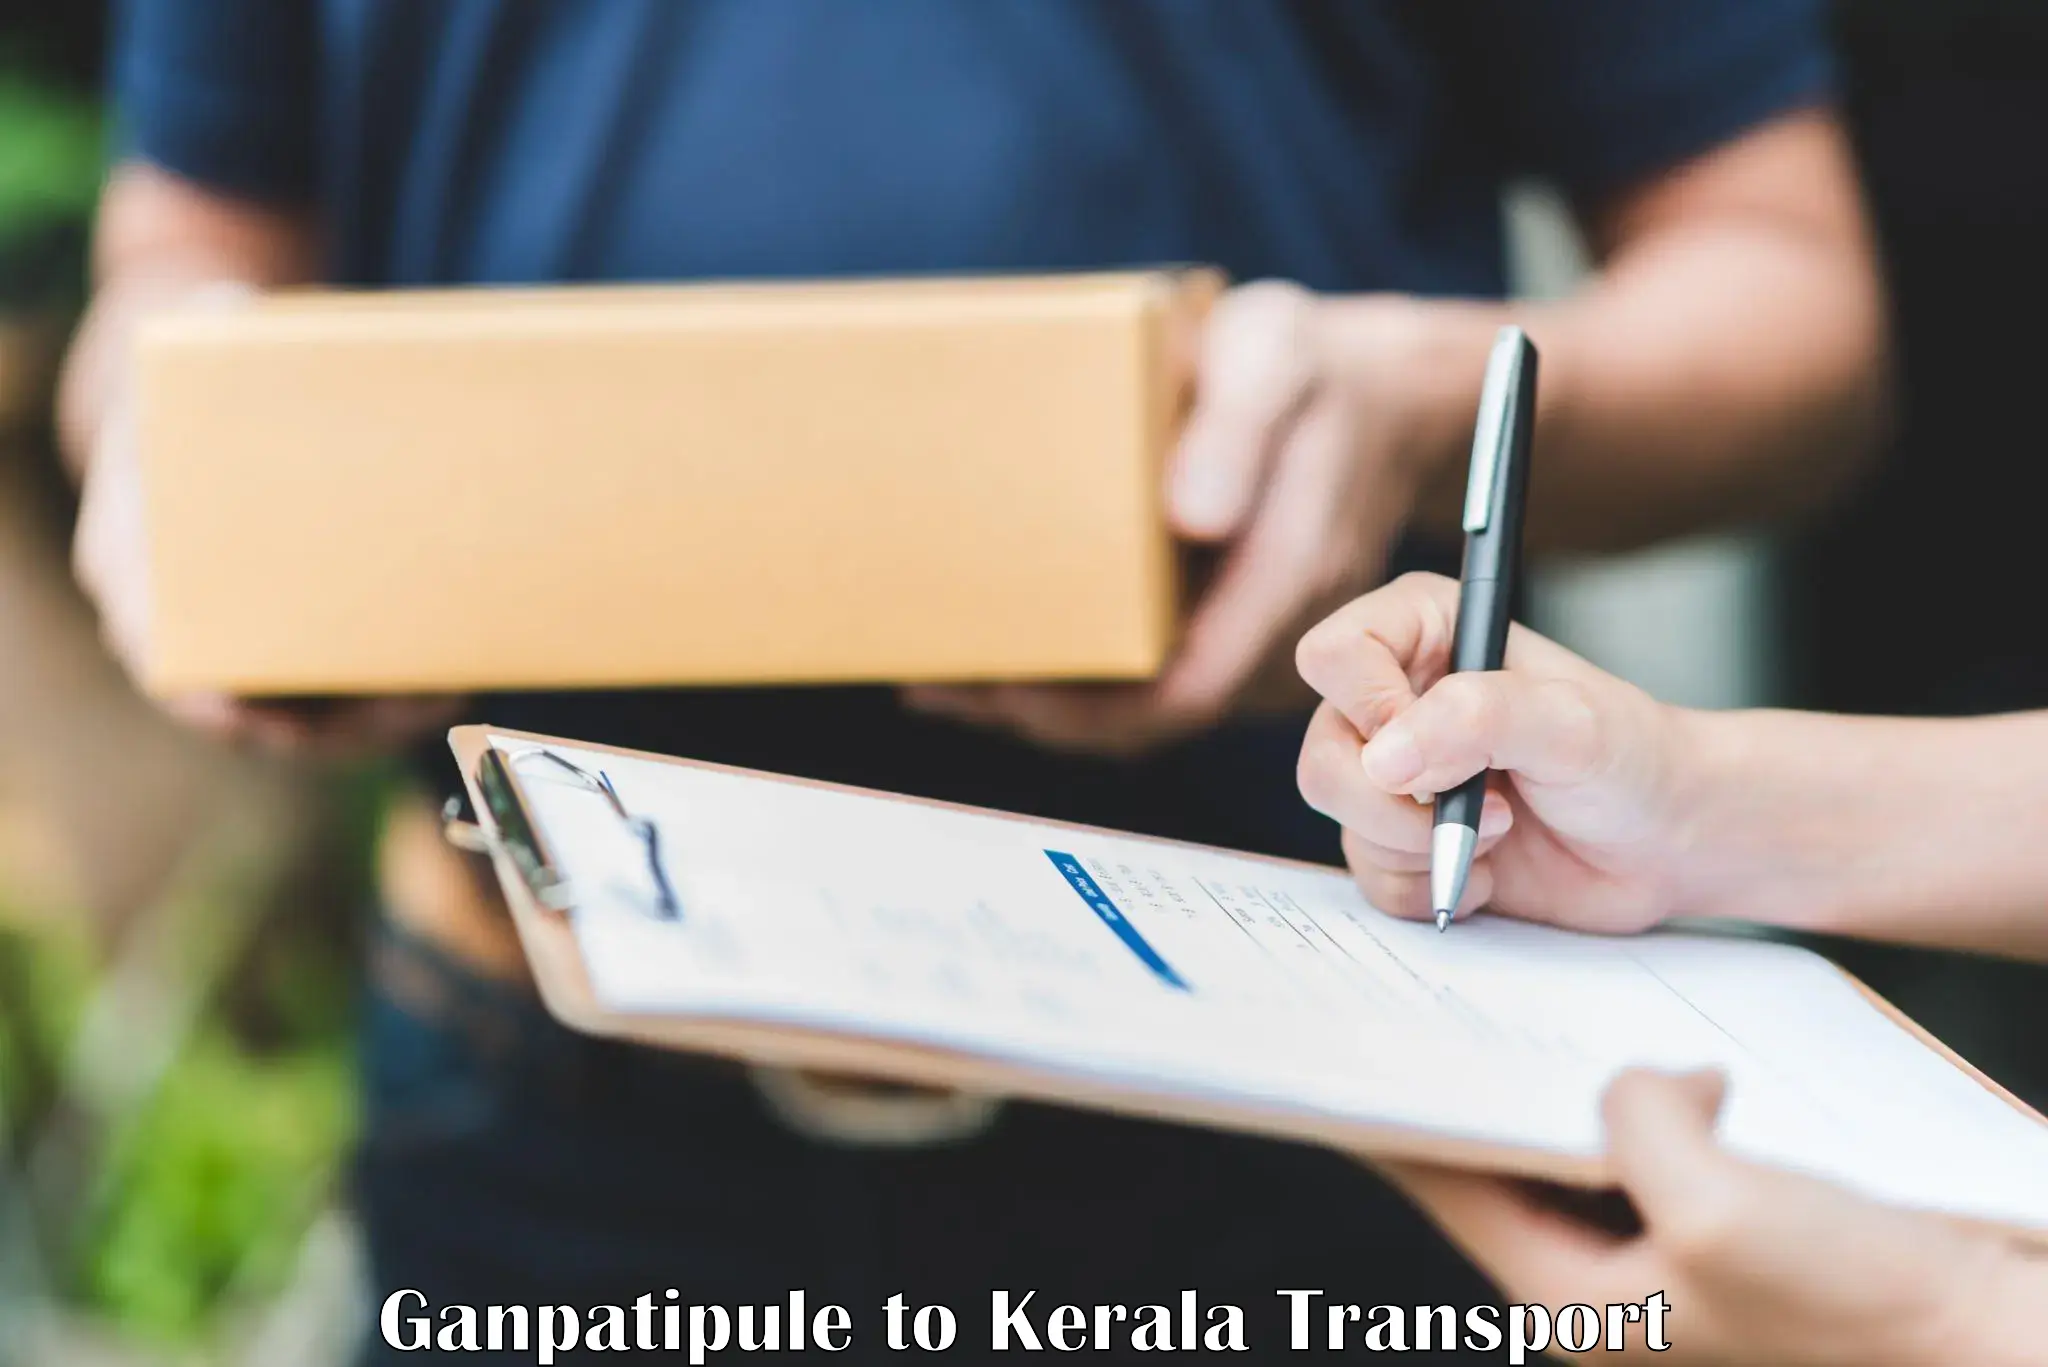 Nearest transport service Ganpatipule to Akaloor